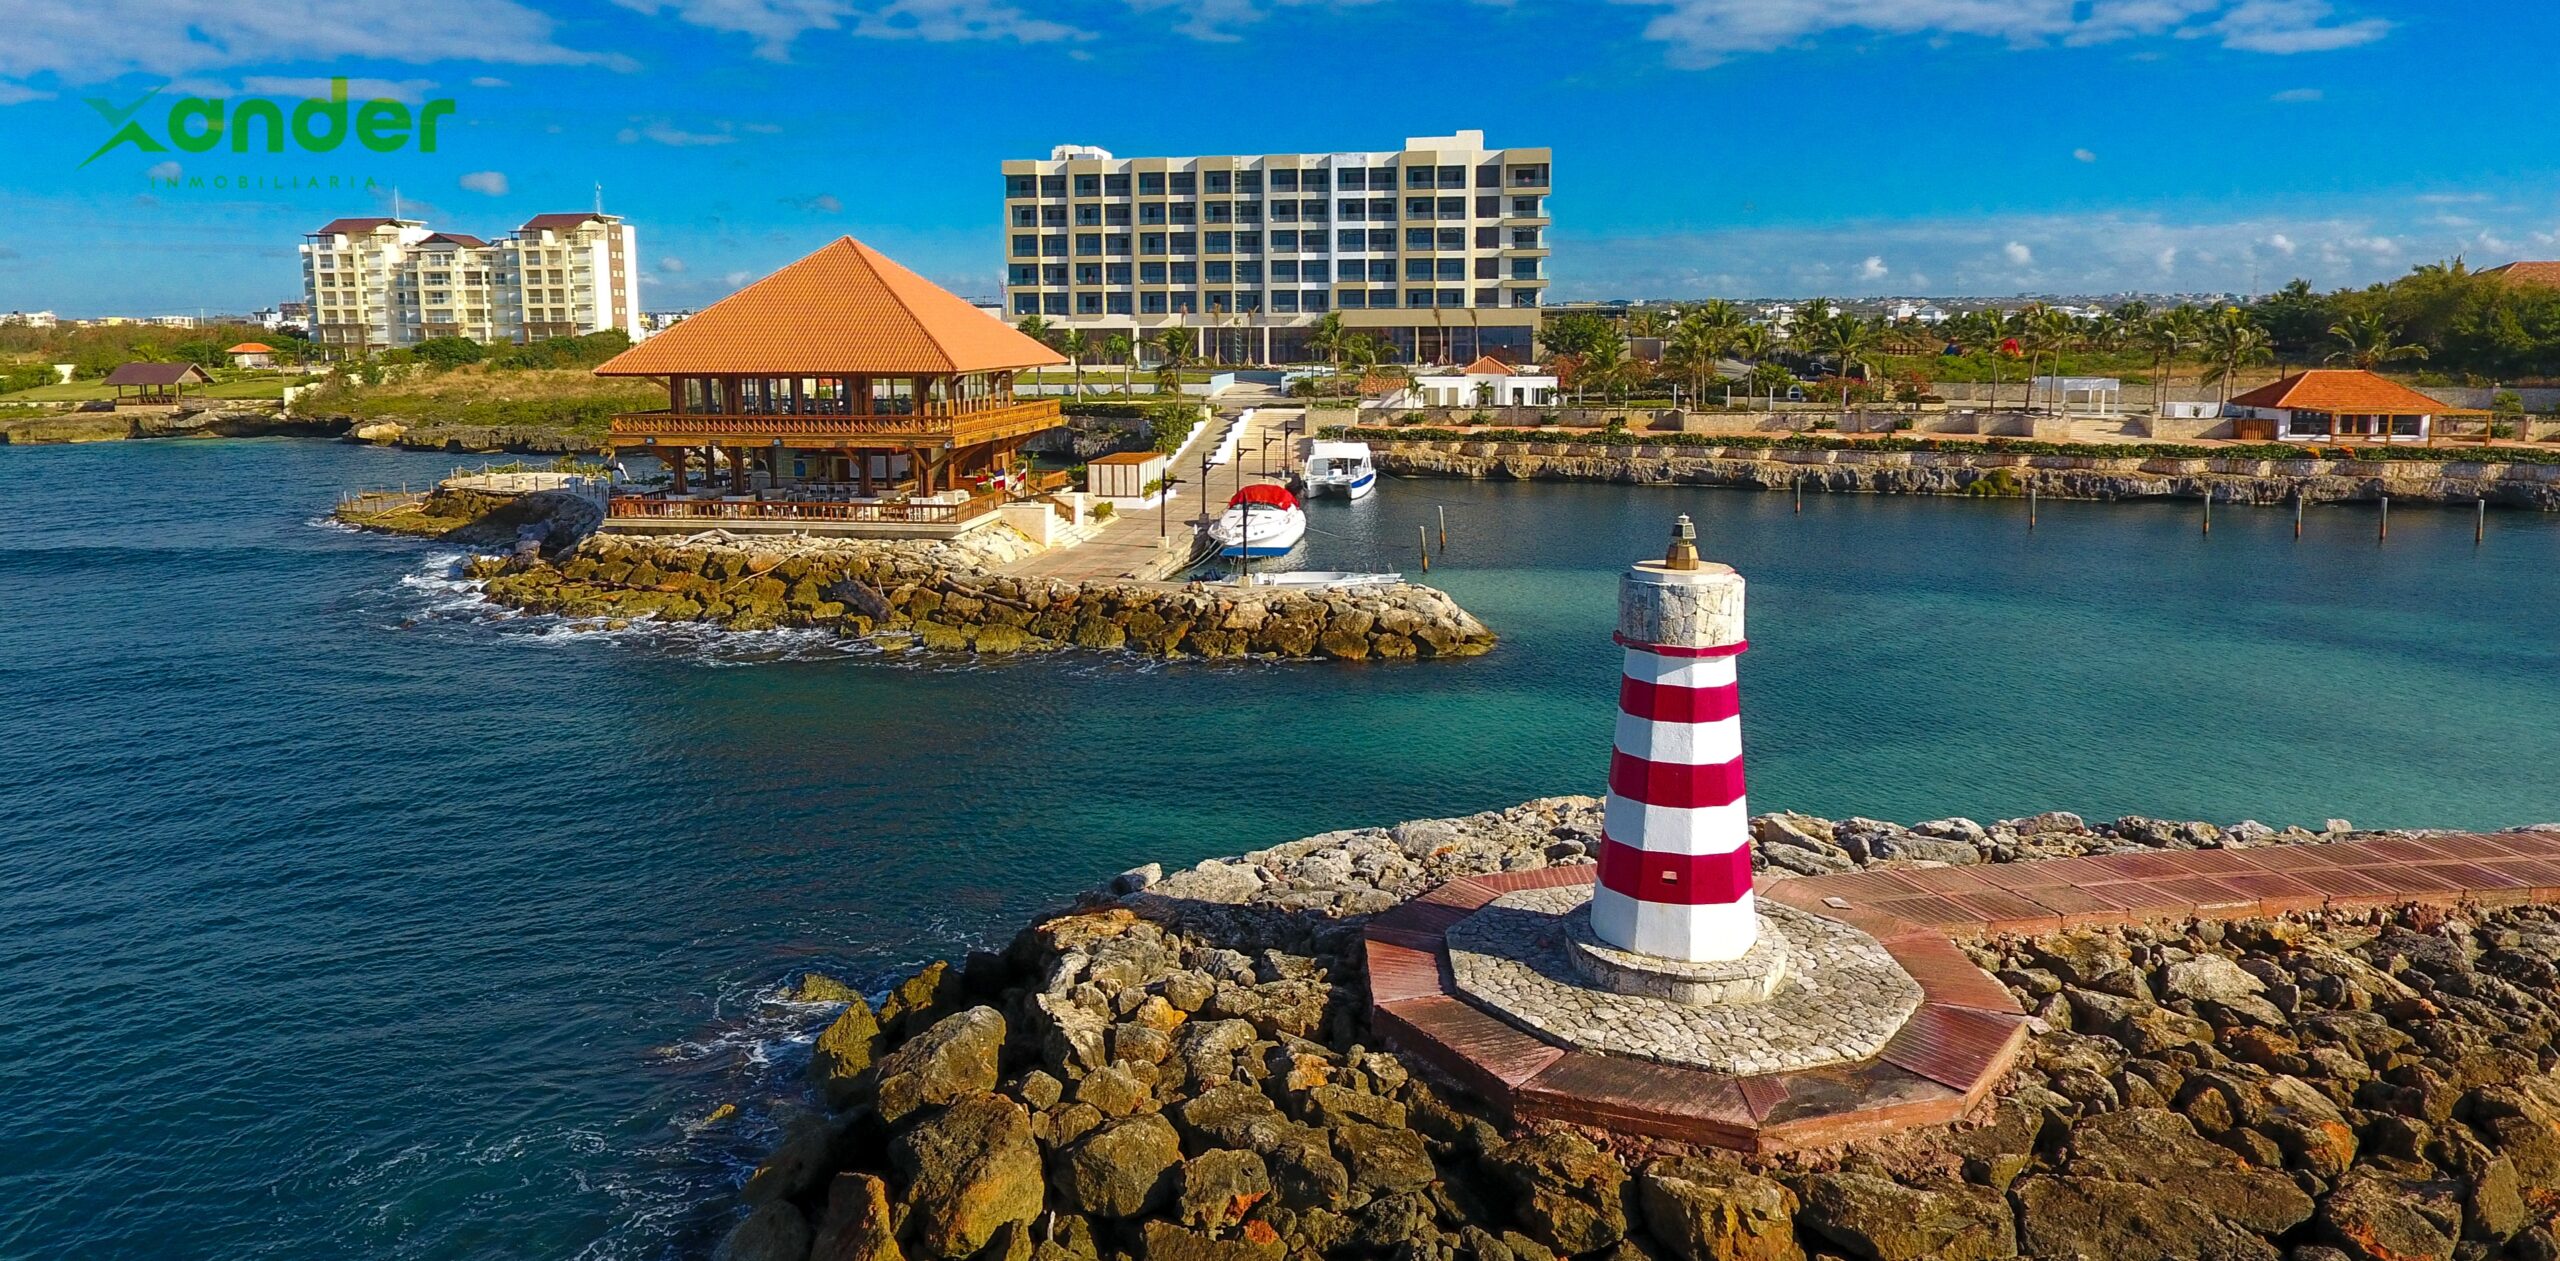 Vista de restaurant capitan kidd yatch club y marina, hotel hilton y Catalina Bay en una sola toma, ubicados en Caleta - La Romana.